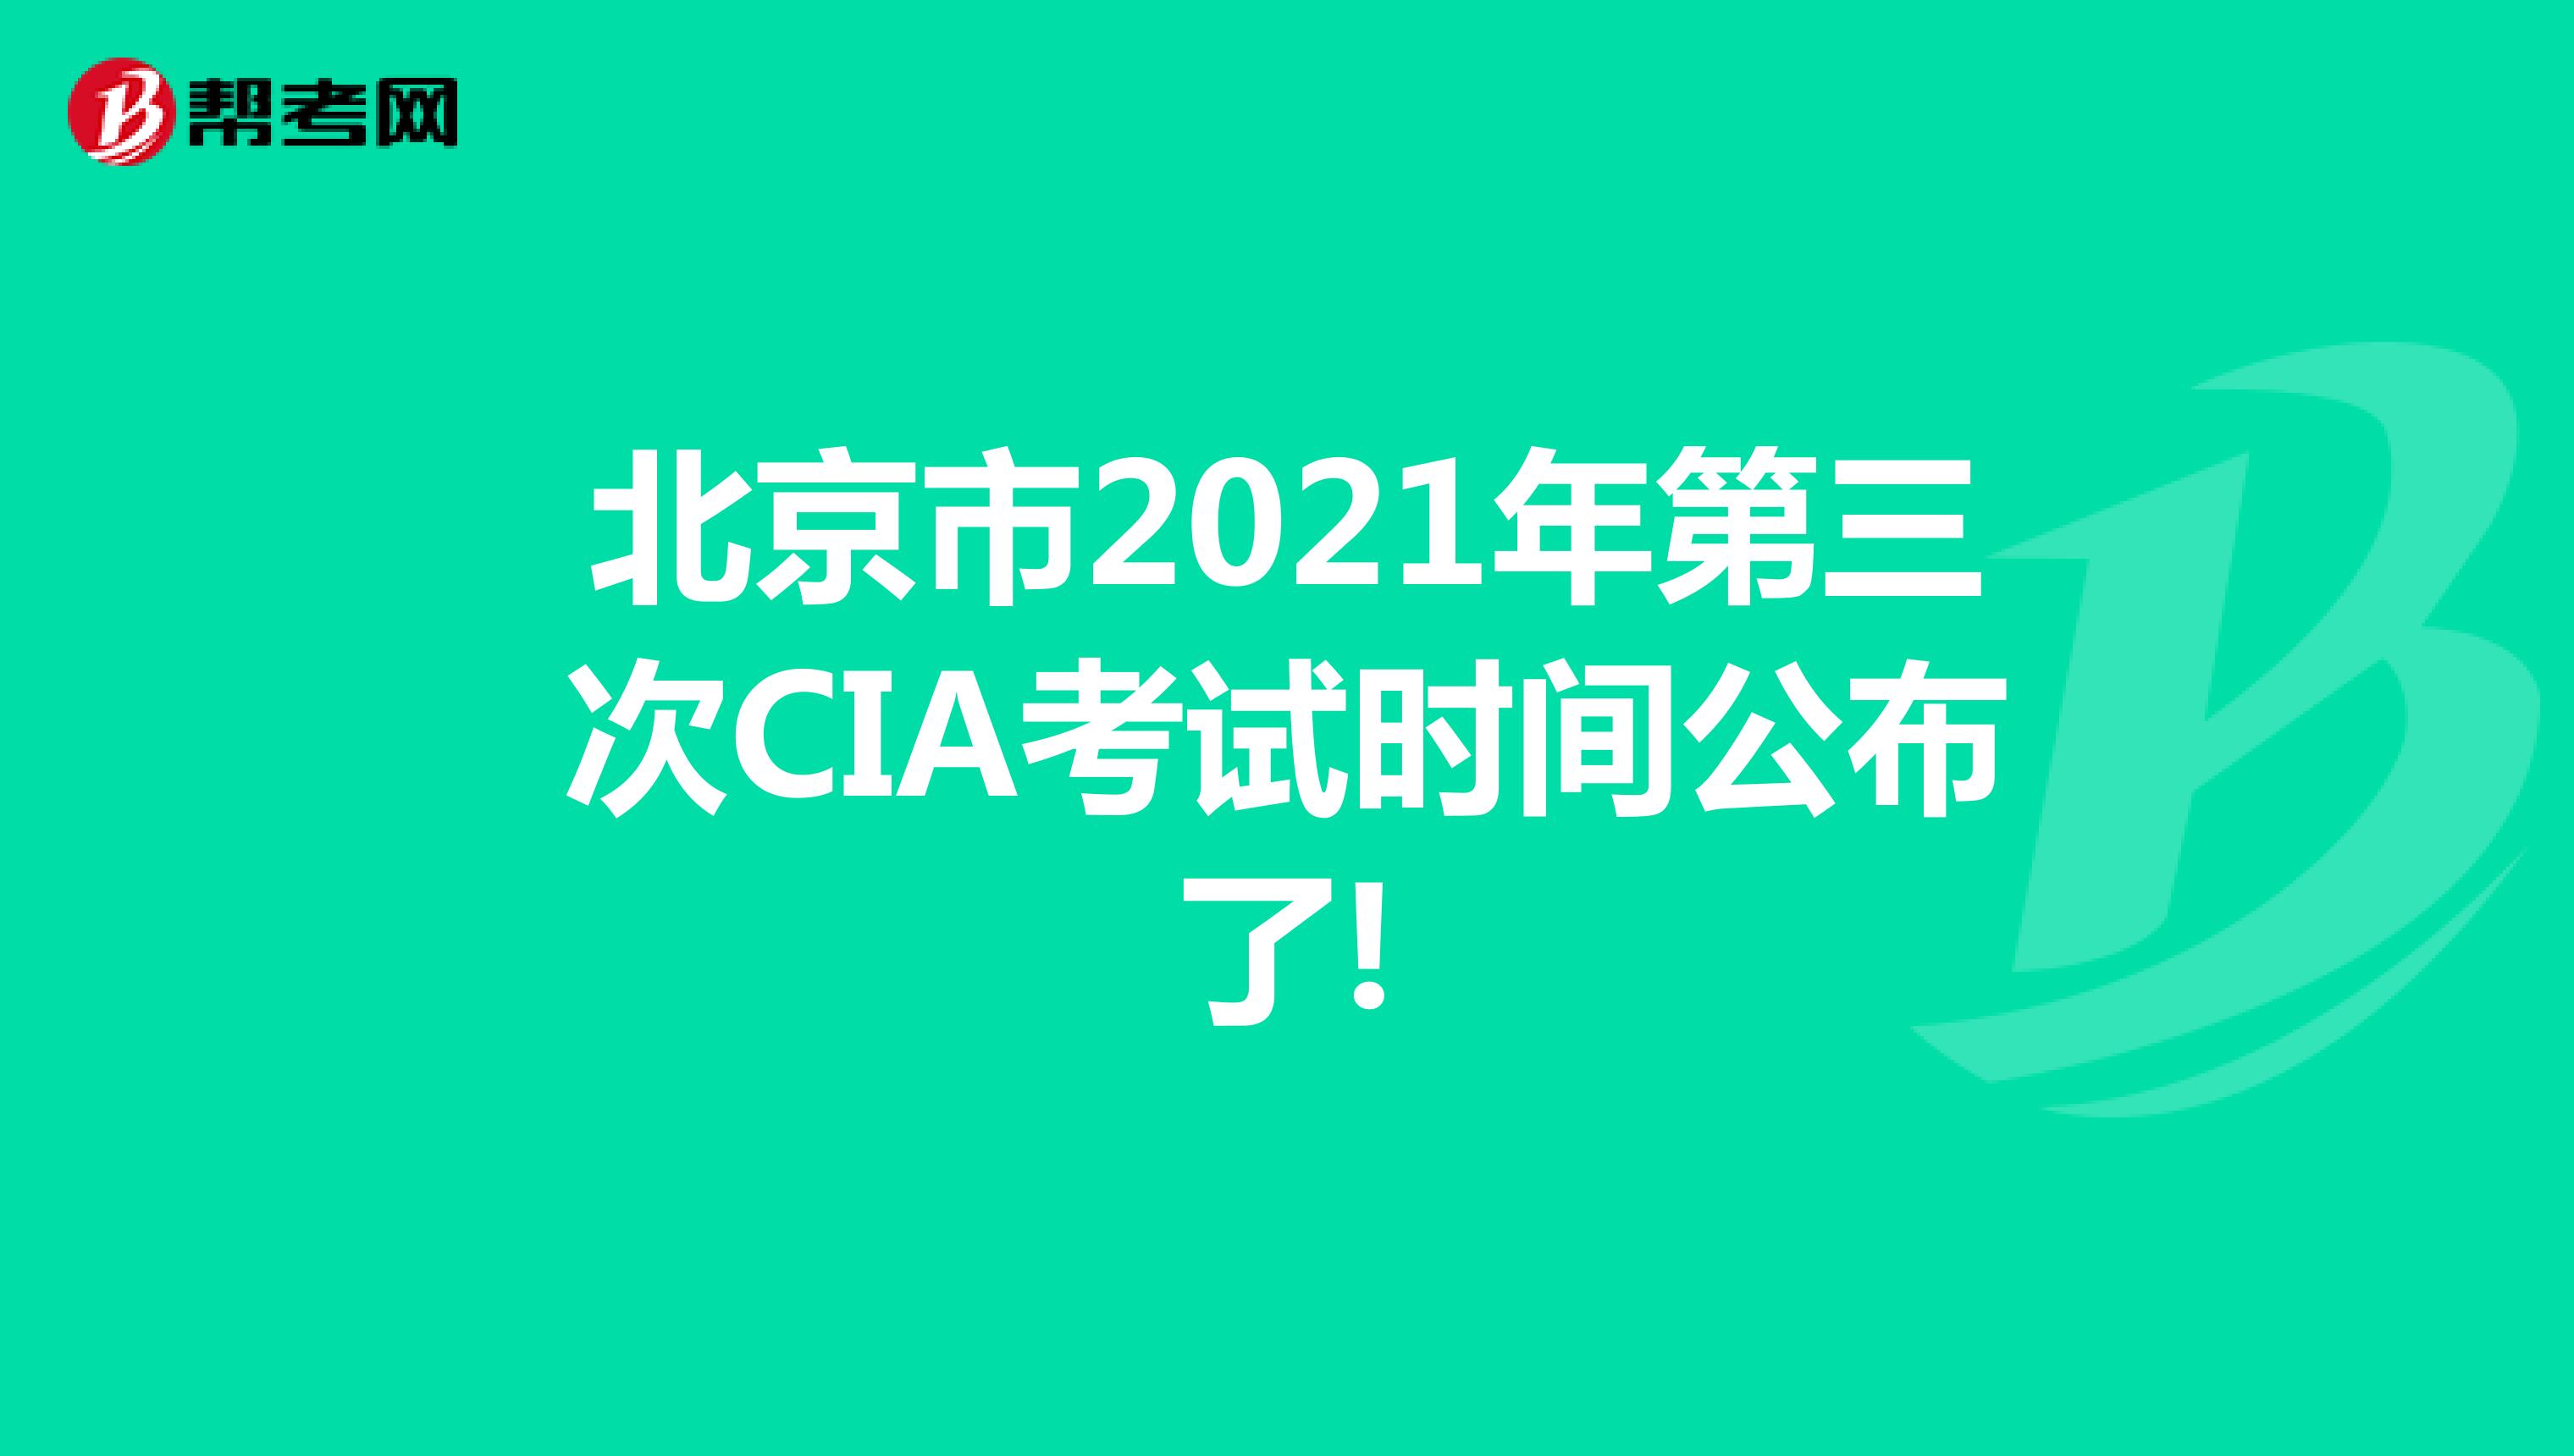 北京市2021年第三次CIA考试时间公布了!